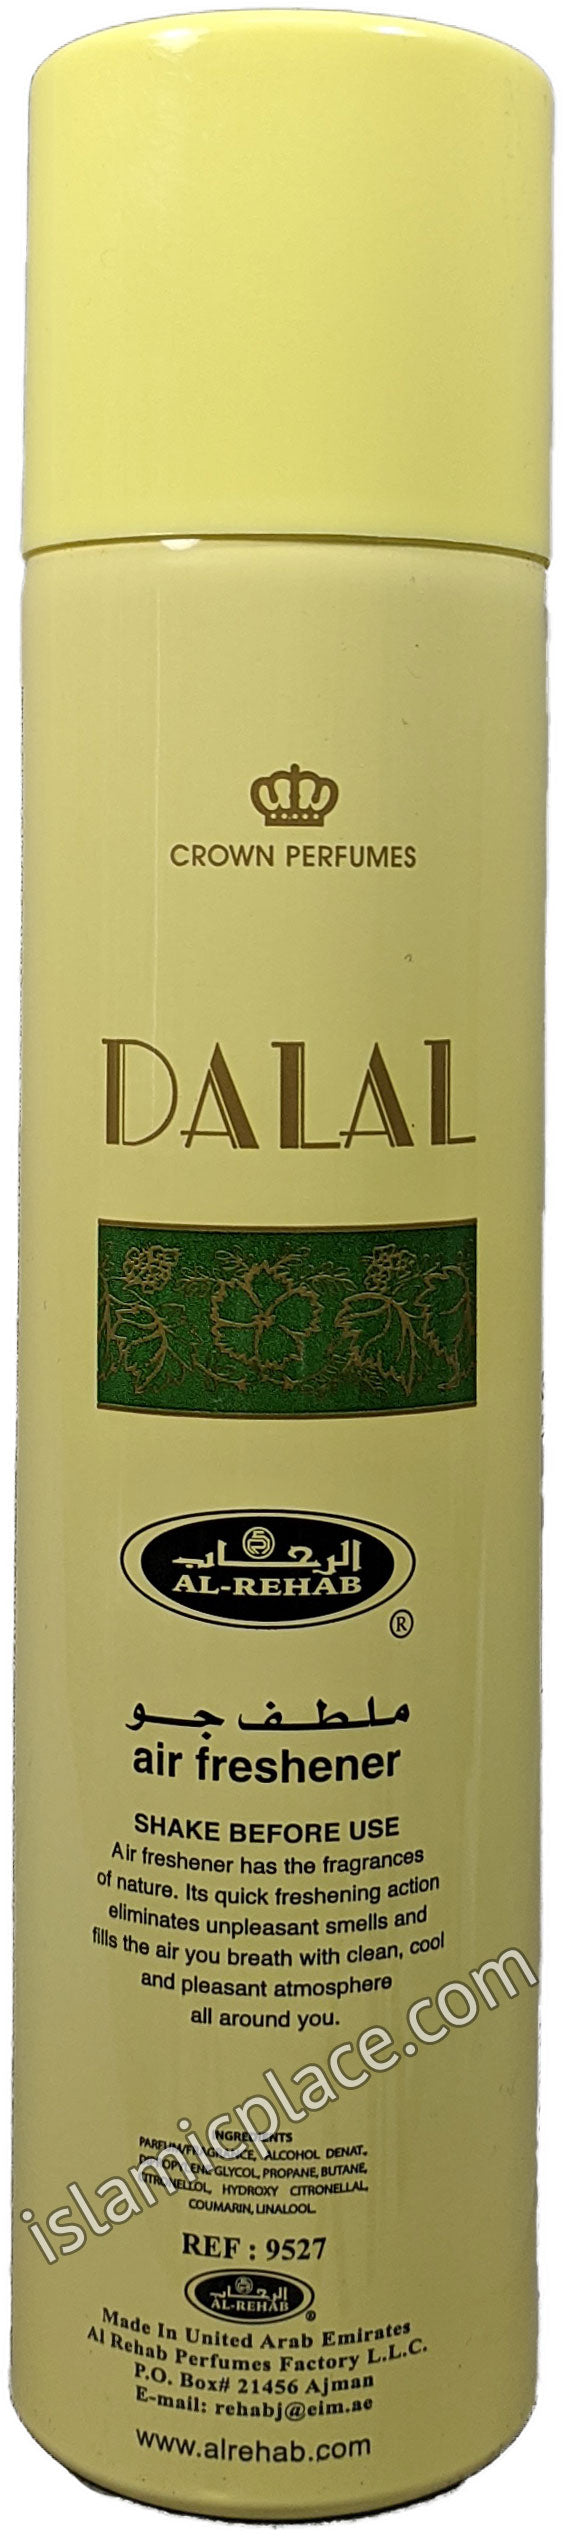 Dalal - Air Freshener Can (300 ml)